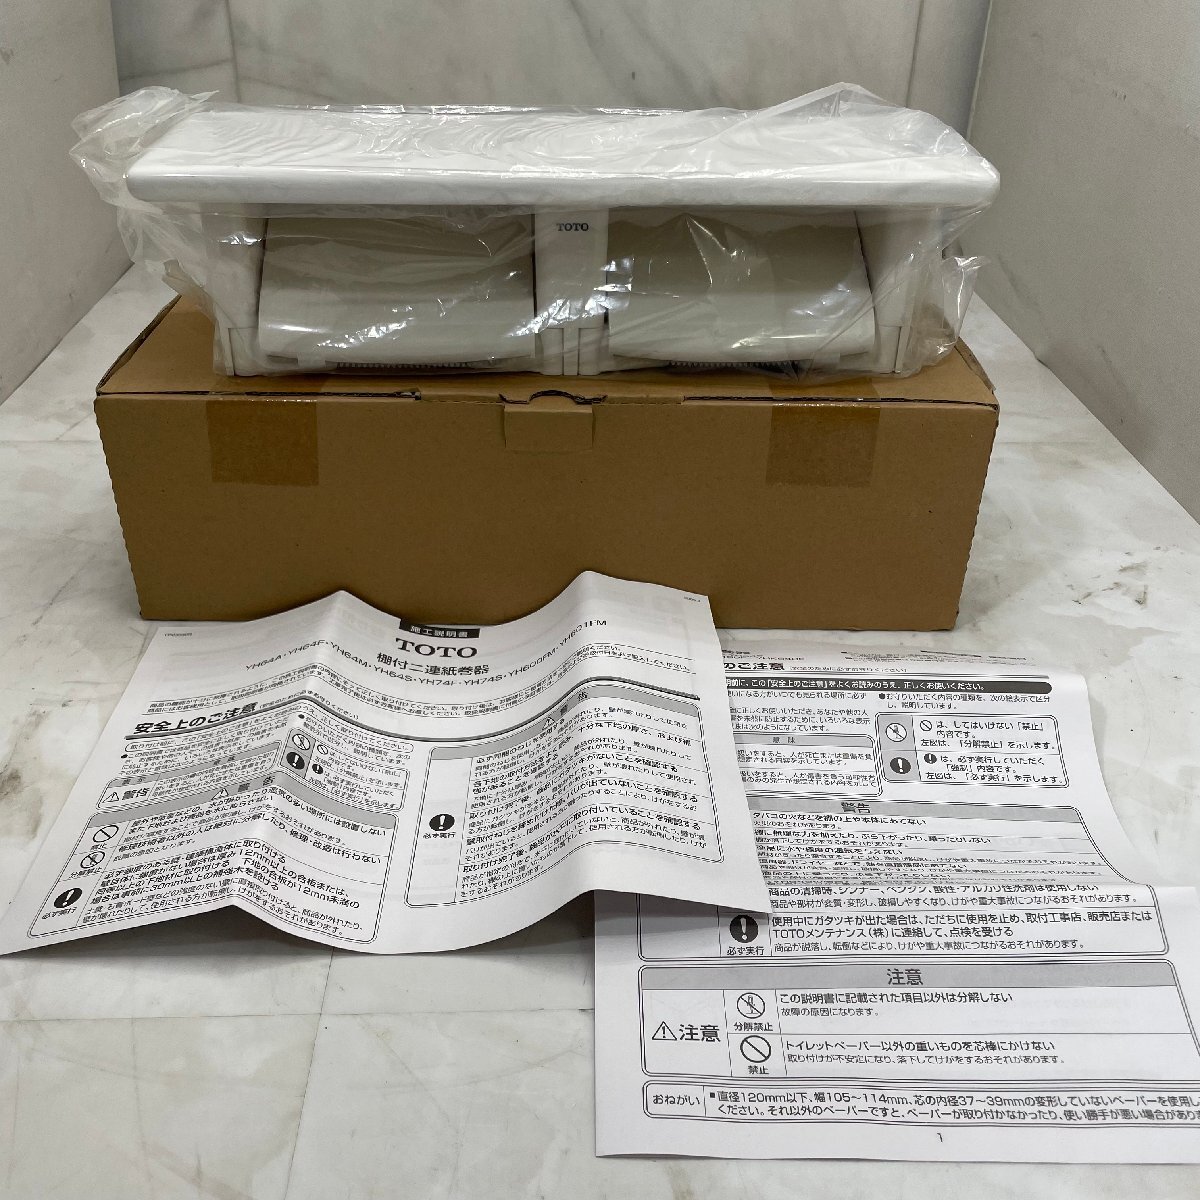 ♭M♭ новый товар TOTO полки есть 2 полосный бумага шт контейнер YH601FM не использовался товар туалет to бумага держатель ♭J-240511